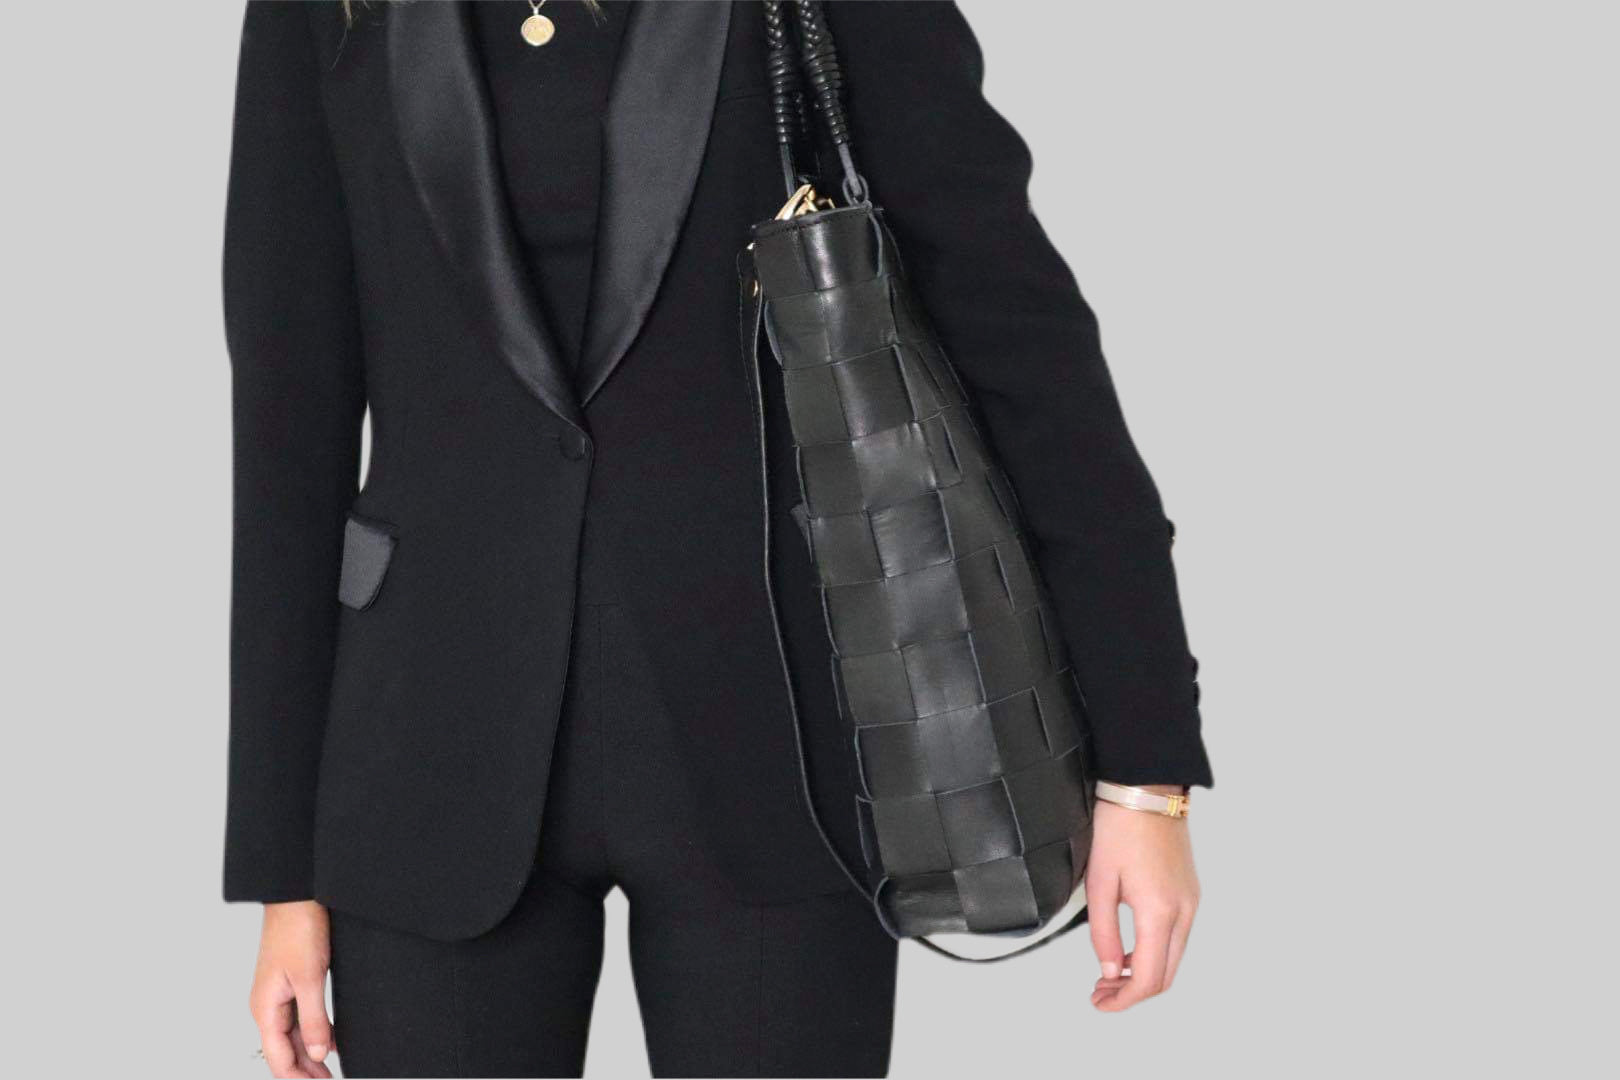 En elegant ung kvinne i sort dress bærer en Ribichini Square skinnveske over skulderen. Vesken, sett fra fronten, viser detaljene og designen tydelig.